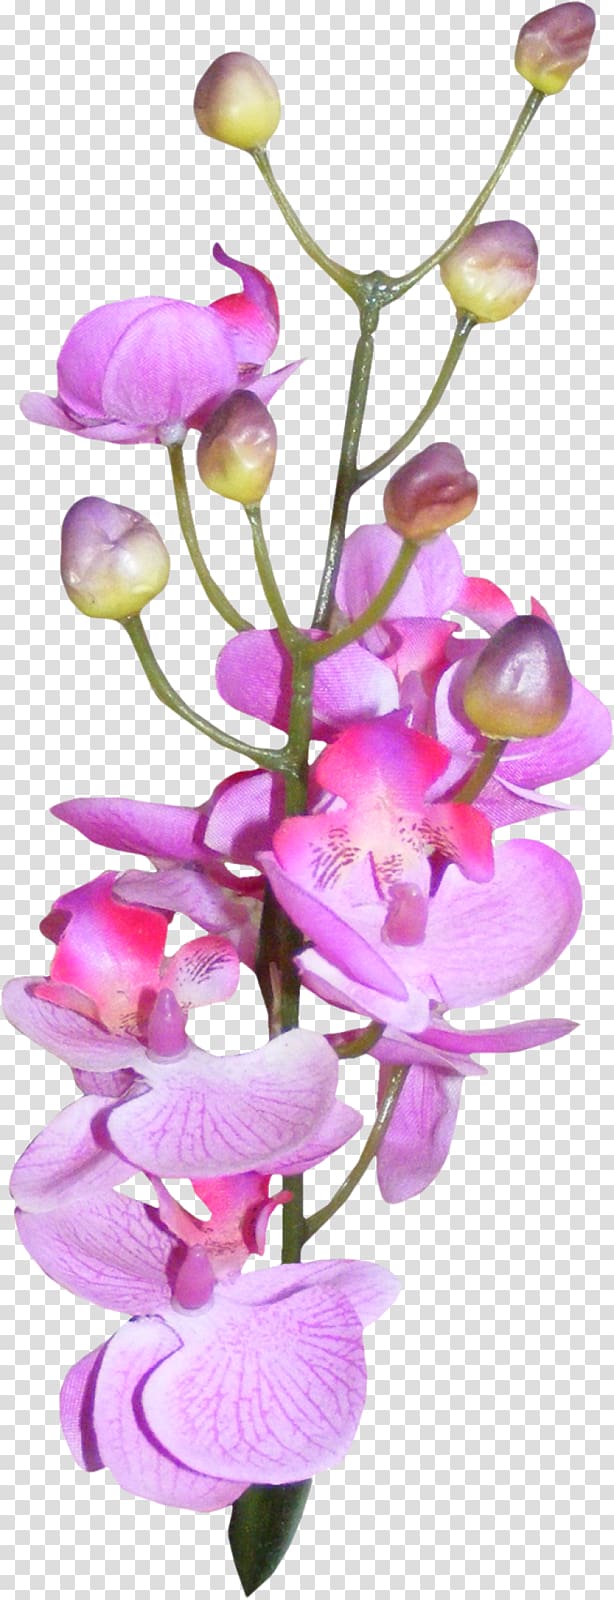 Moth orchids, purple transparent background PNG clipart